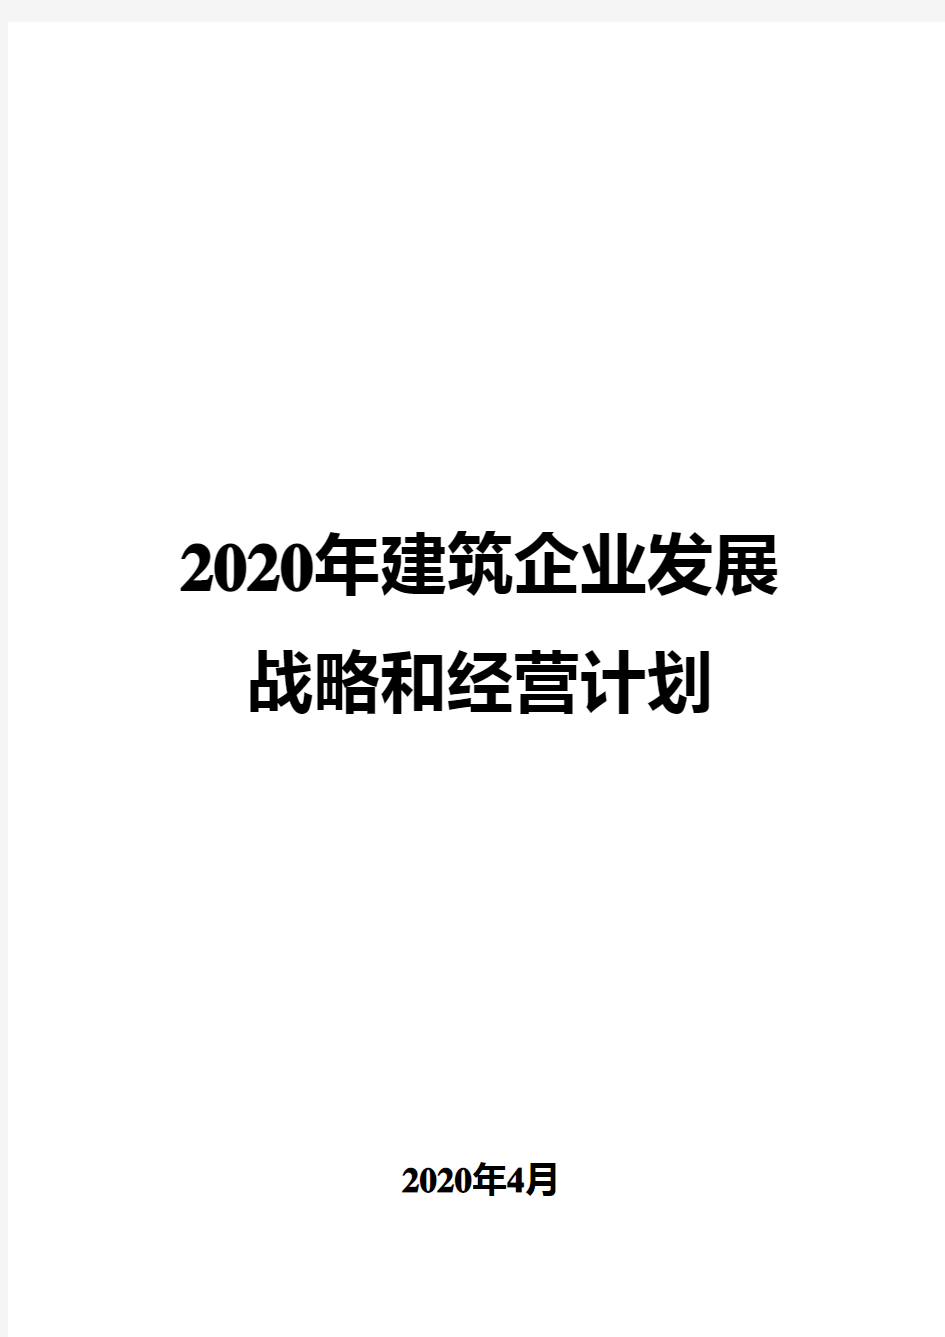 2020年建筑企业发展战略和经营计划